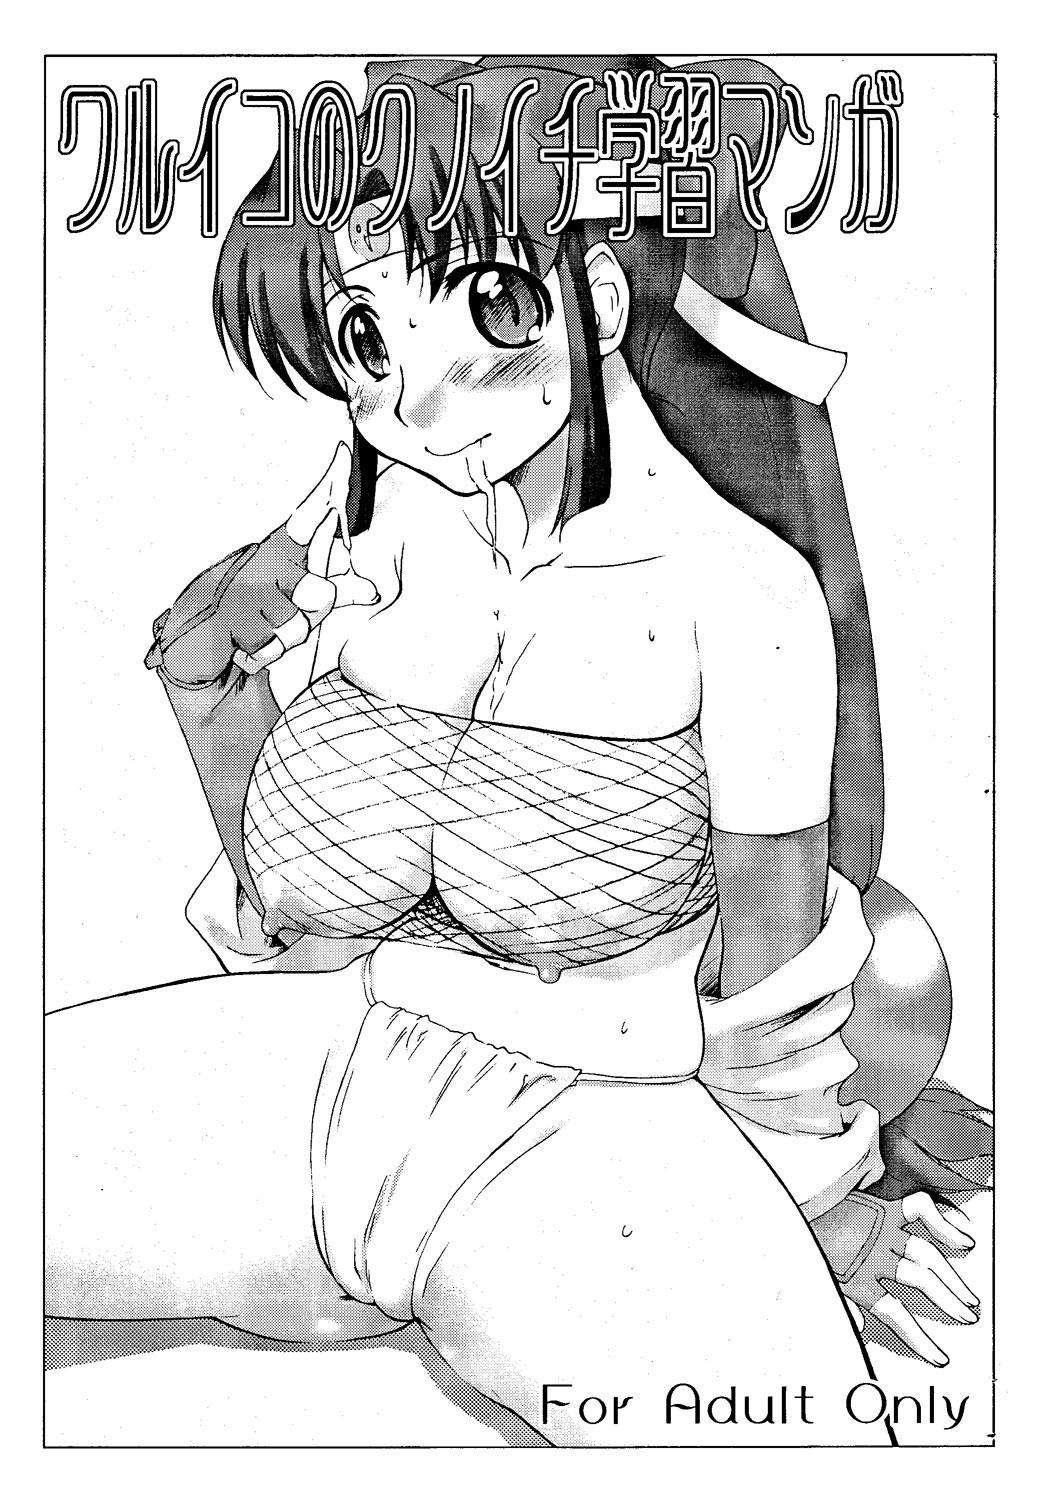 Sentando Waruiko no Kunoichi Gakushuu Manga - 2x2 shinobuden Red - Picture 1